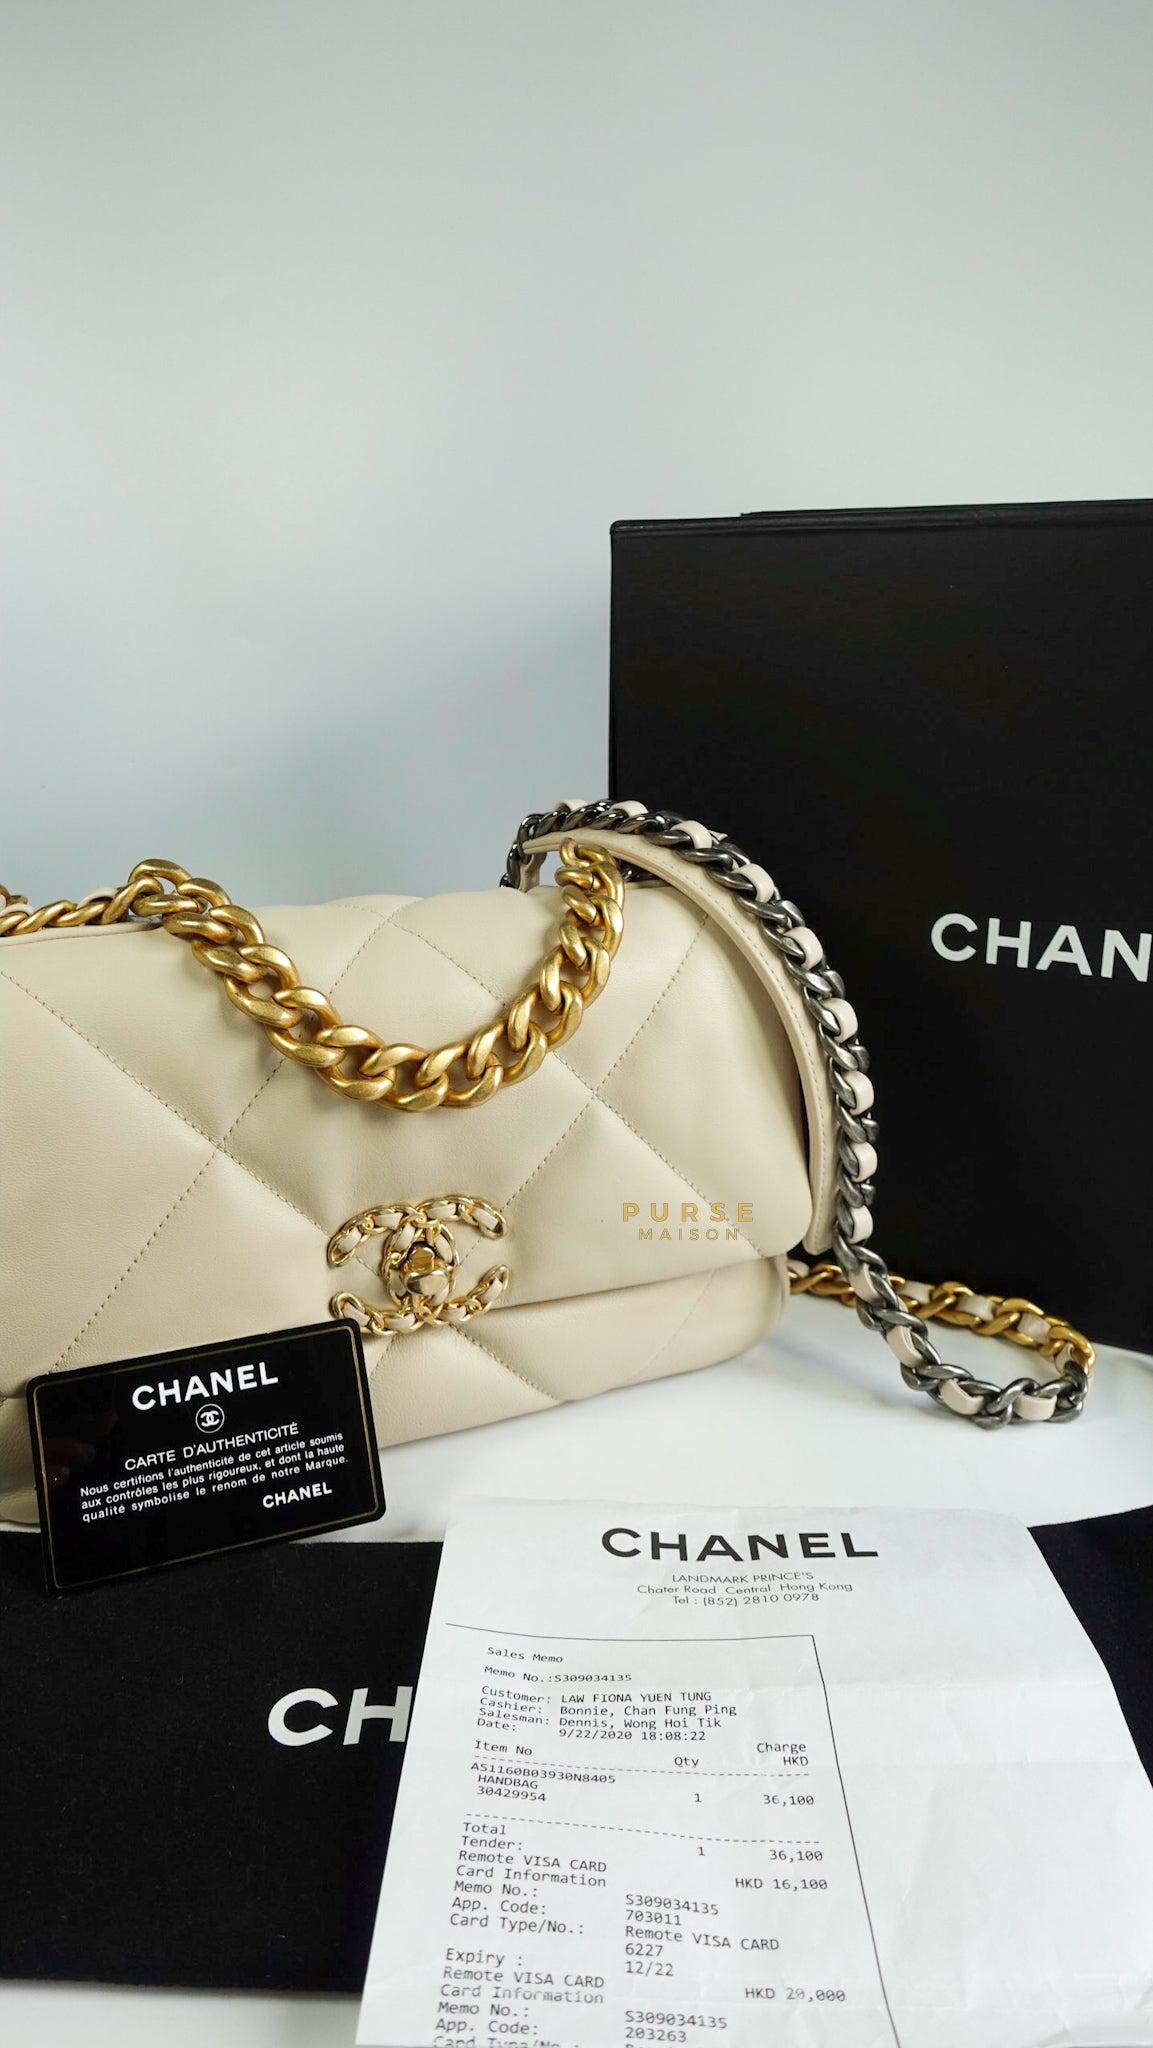 二手名牌 Brand  Chanel Code  30 Size  2314 Details   Facebook